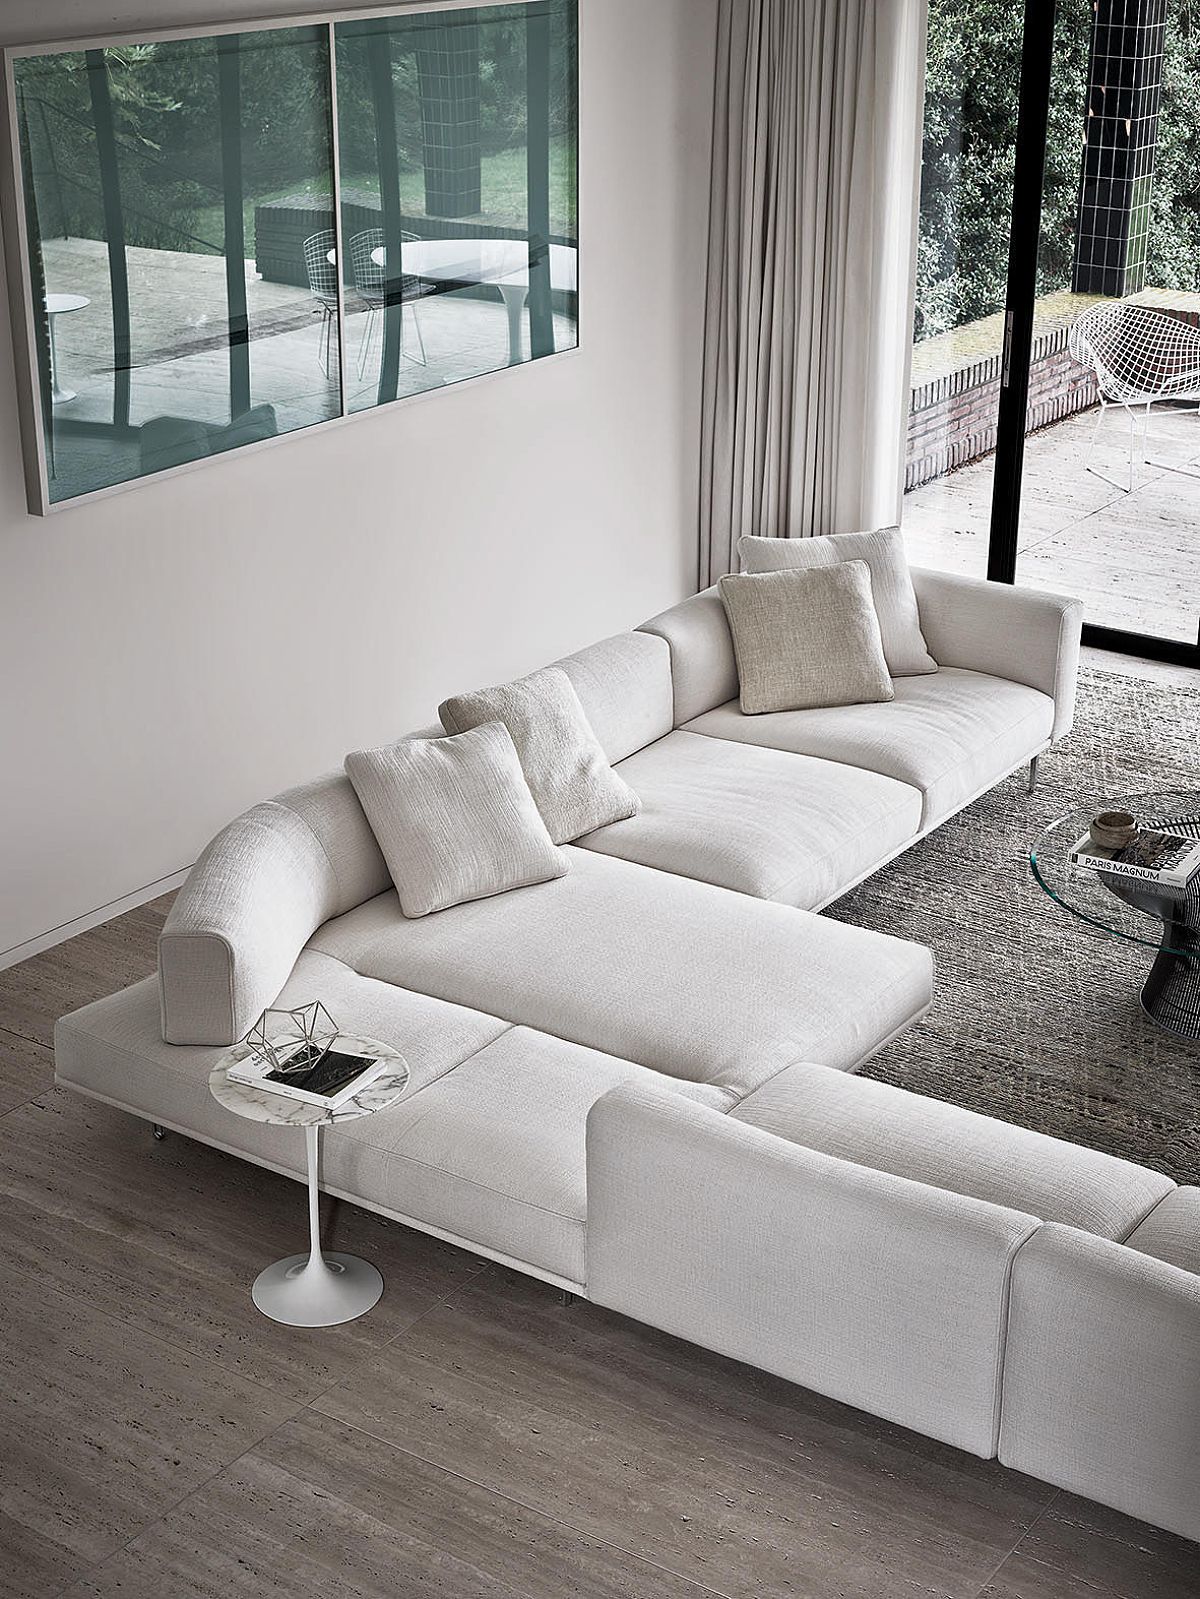 Bekijk de mogelijkheden van de Matic sofa in de Classo toonzaal